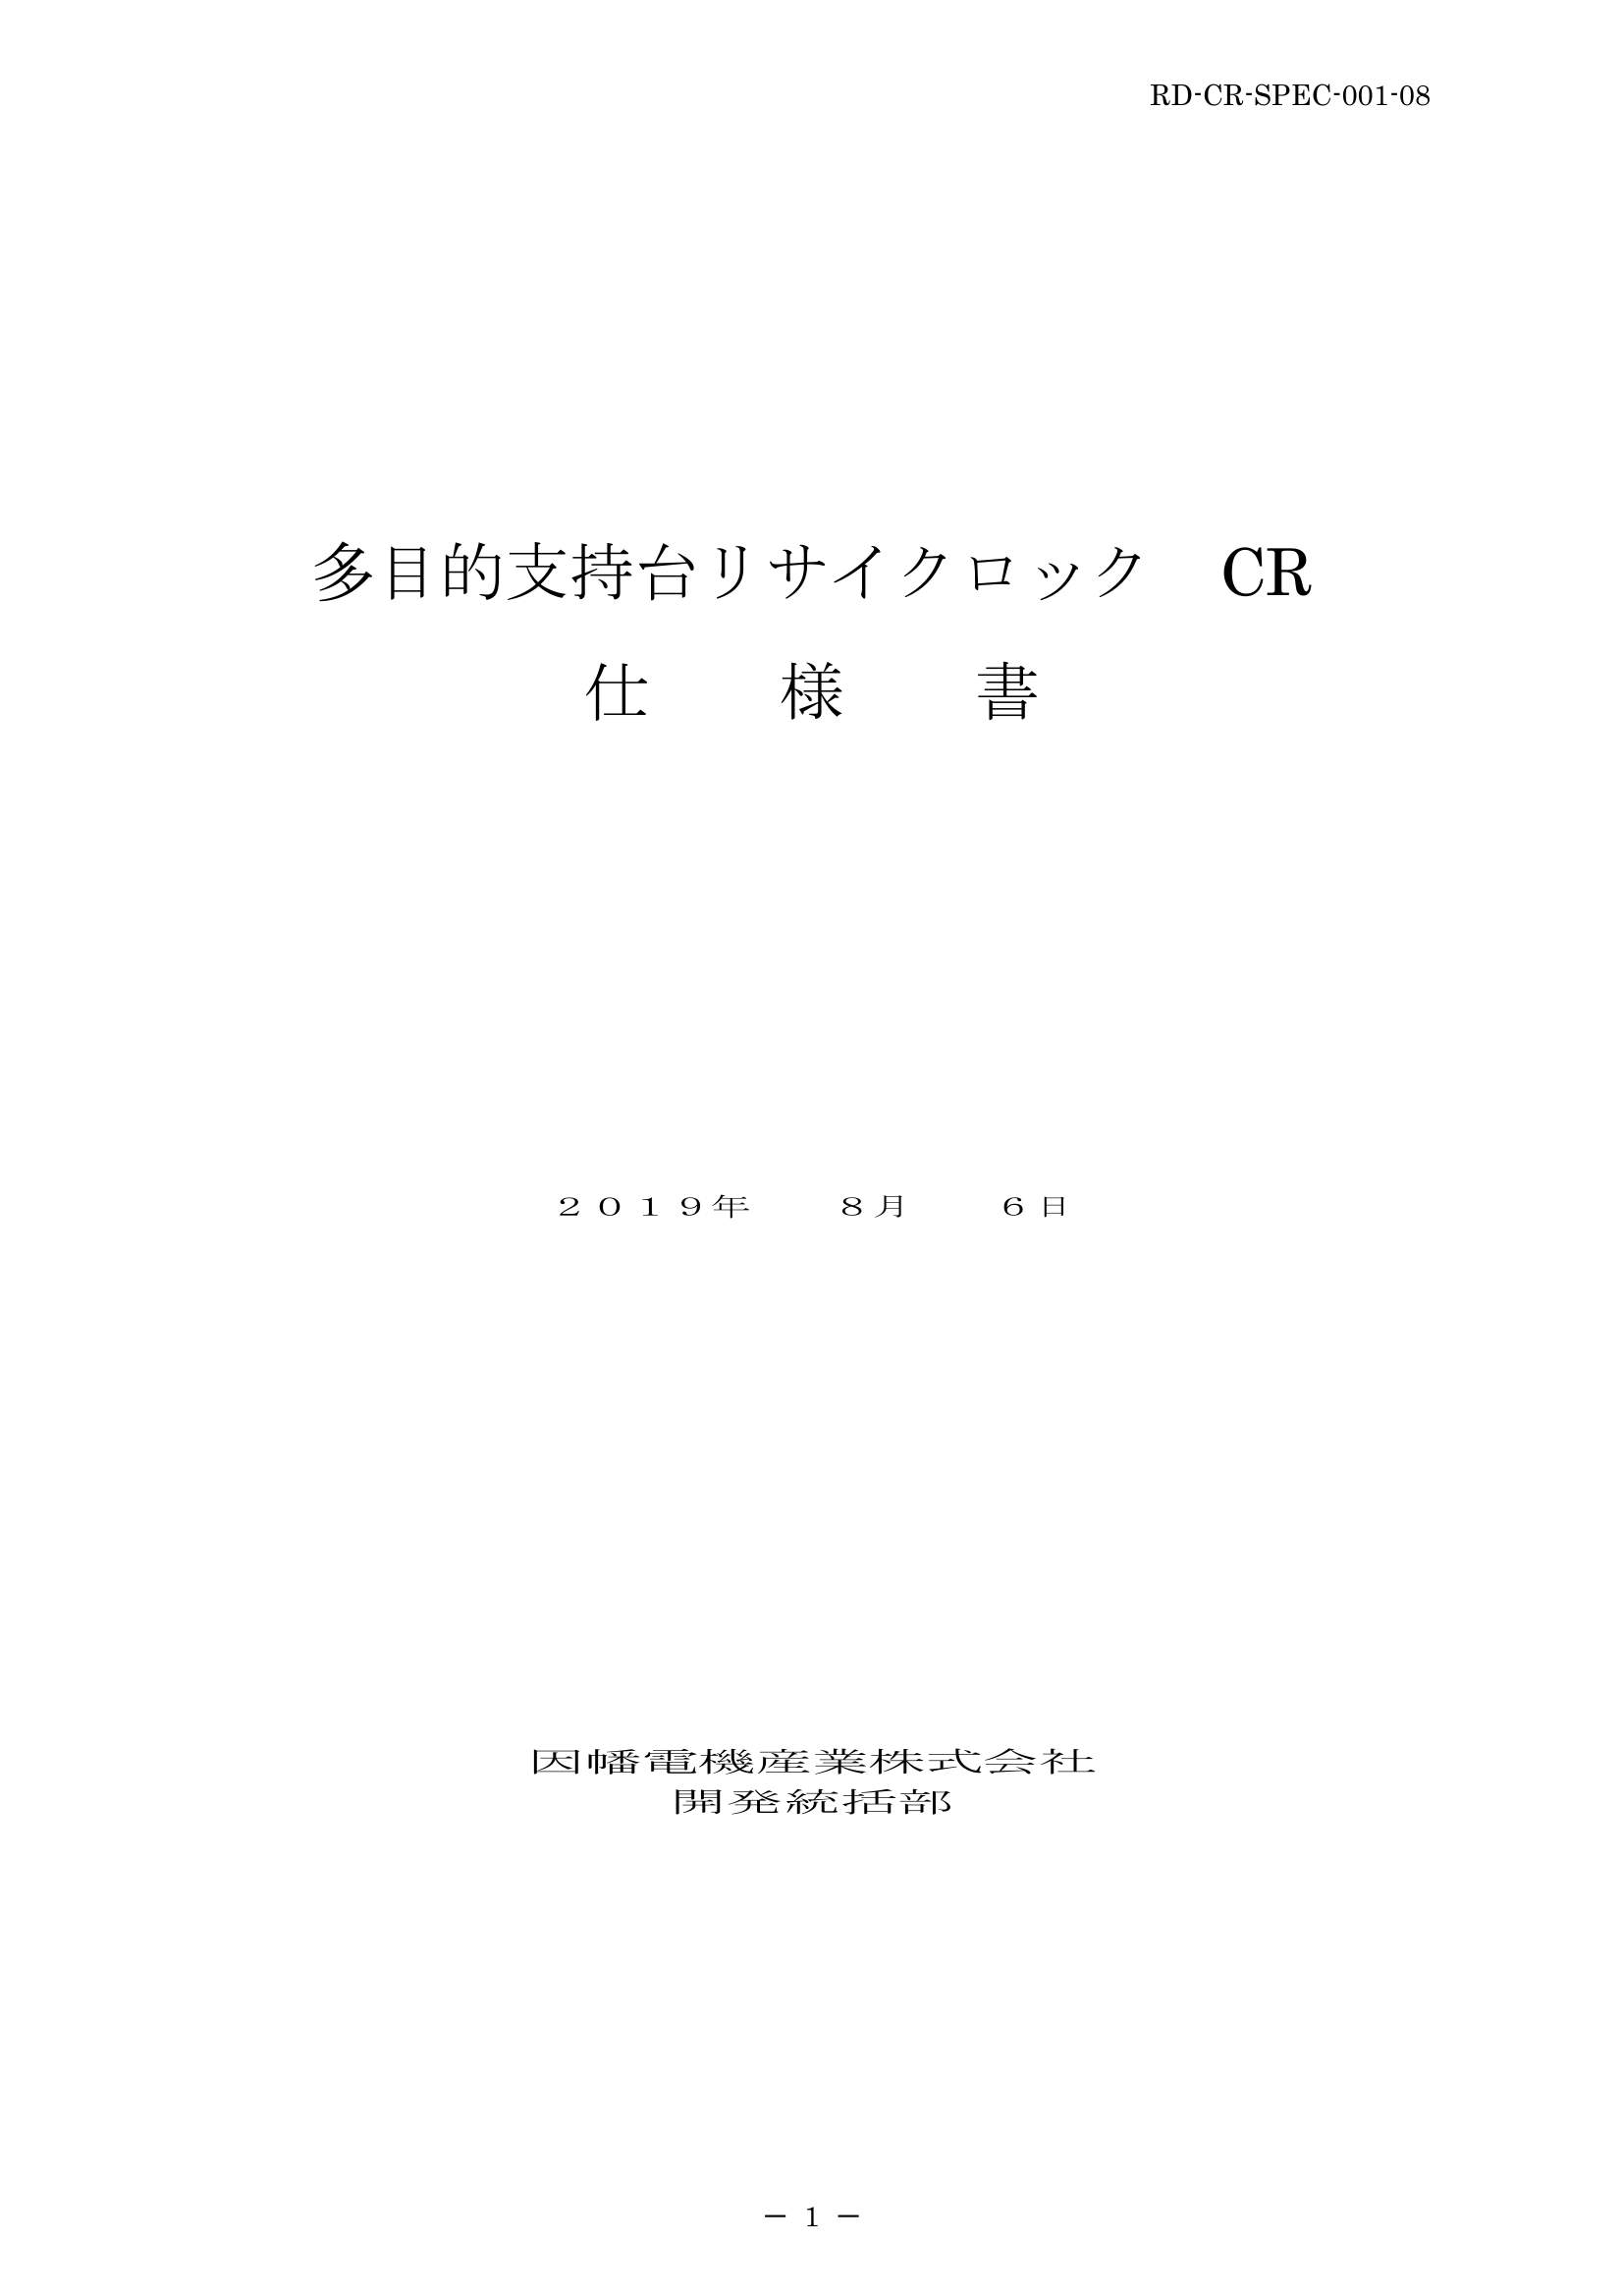 CR_SPEC_20190806-0w.pdf